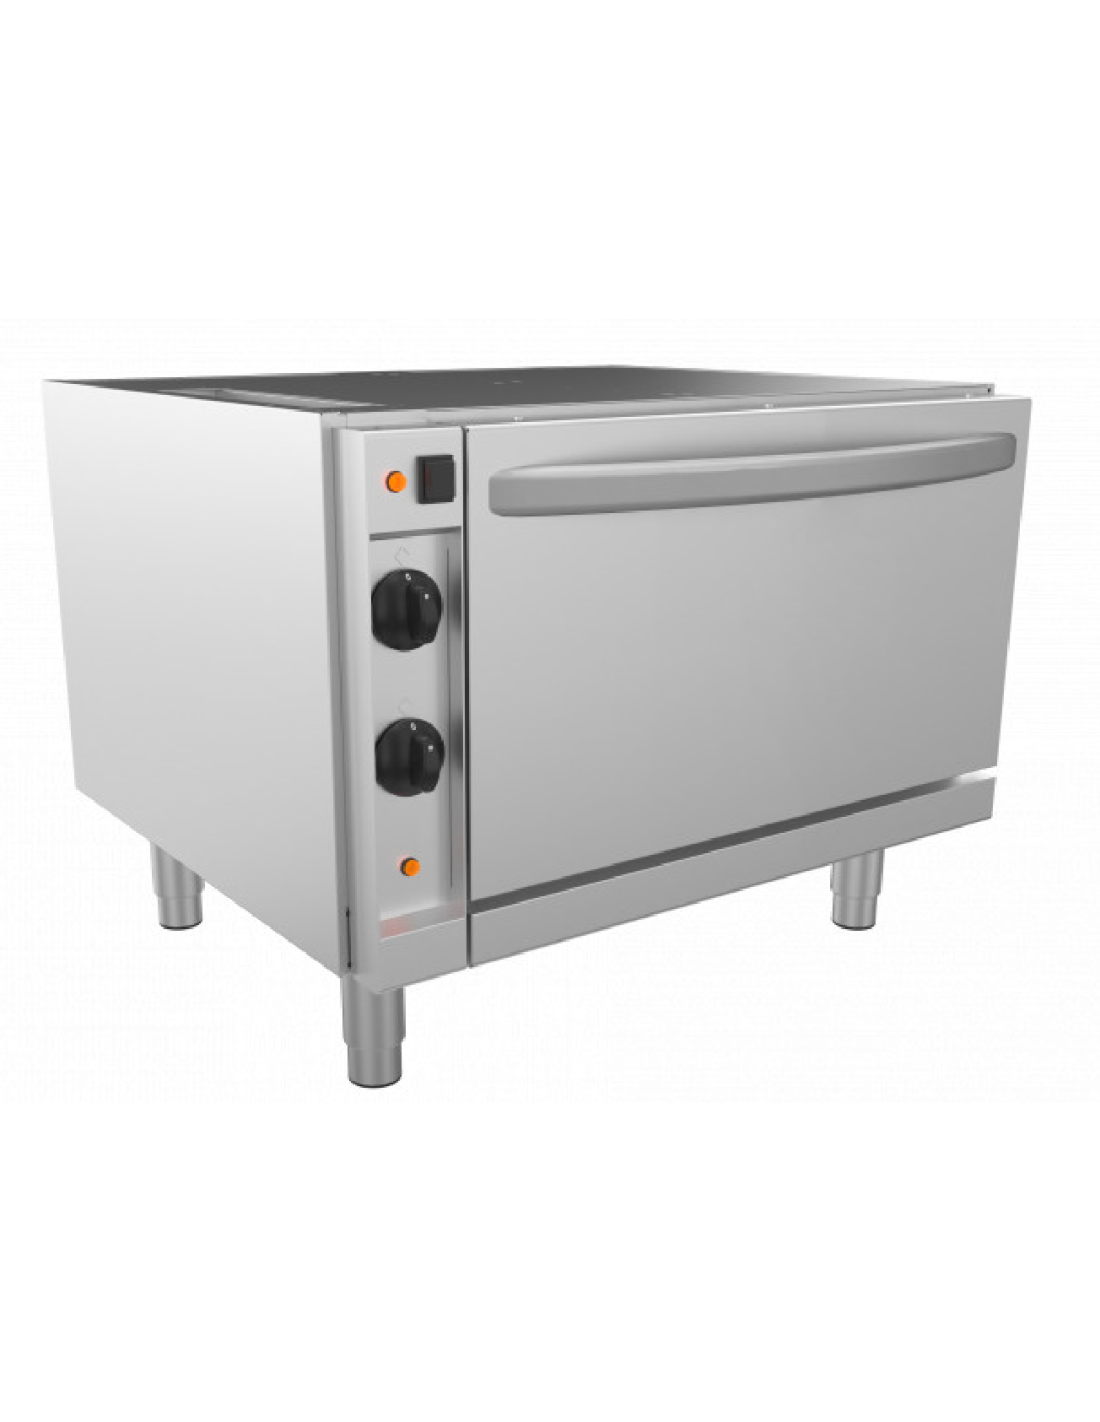 Base su forno elettrico ventilato GN 1/1 - Temperatura 110° a 280°C - 380/415V-3N - 4200 kw - cm 80 x 64.5 x 62 h